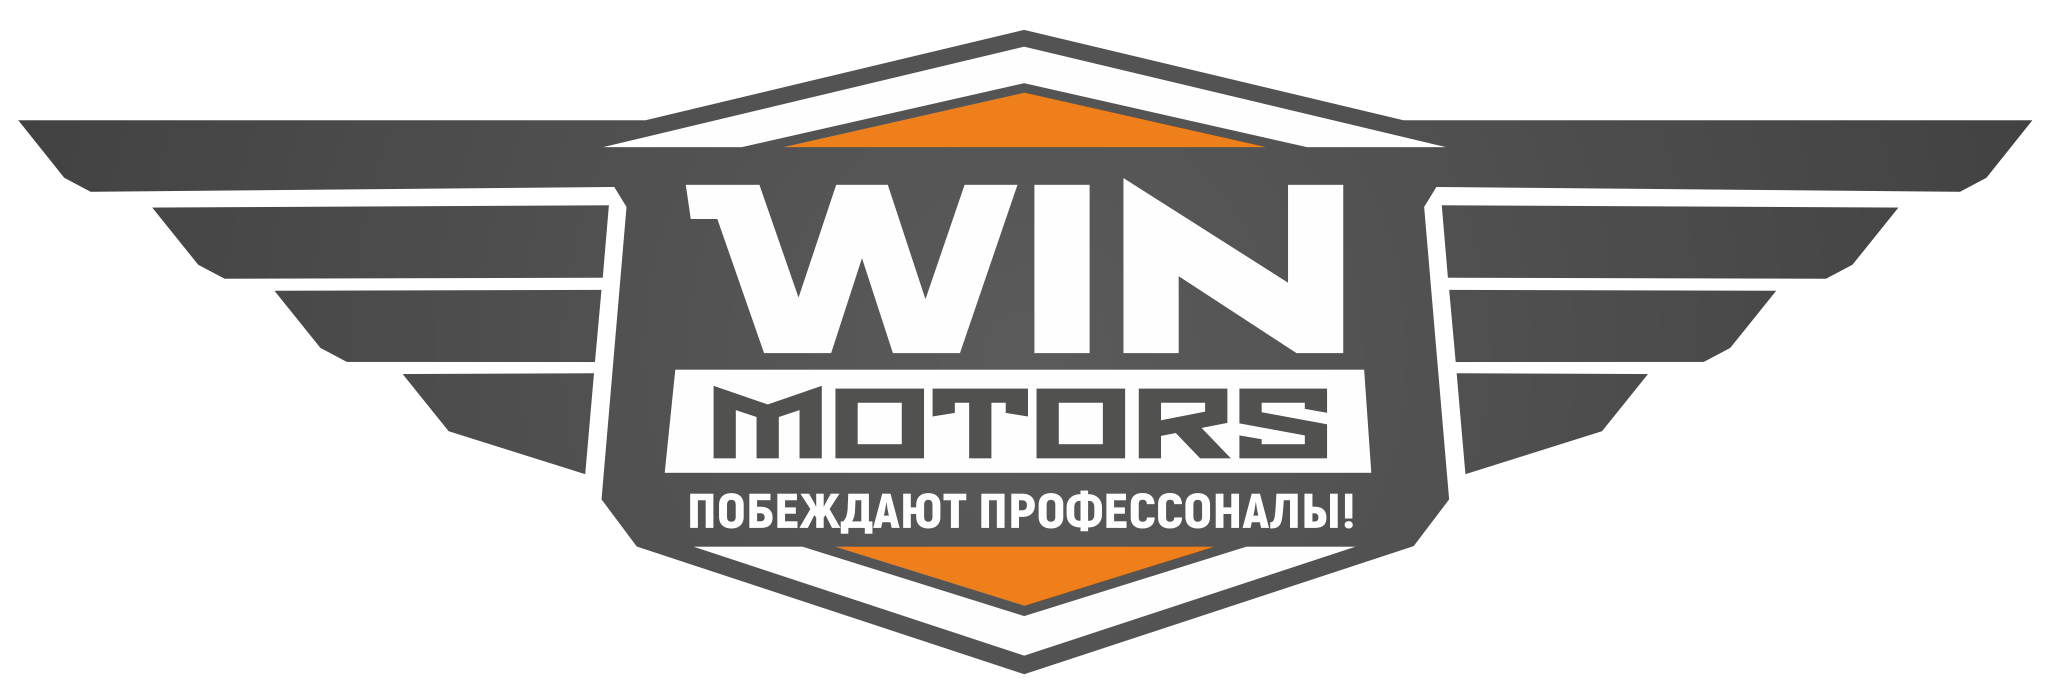 Vin motors. Вин Моторс. Логотип мувинговой компании.